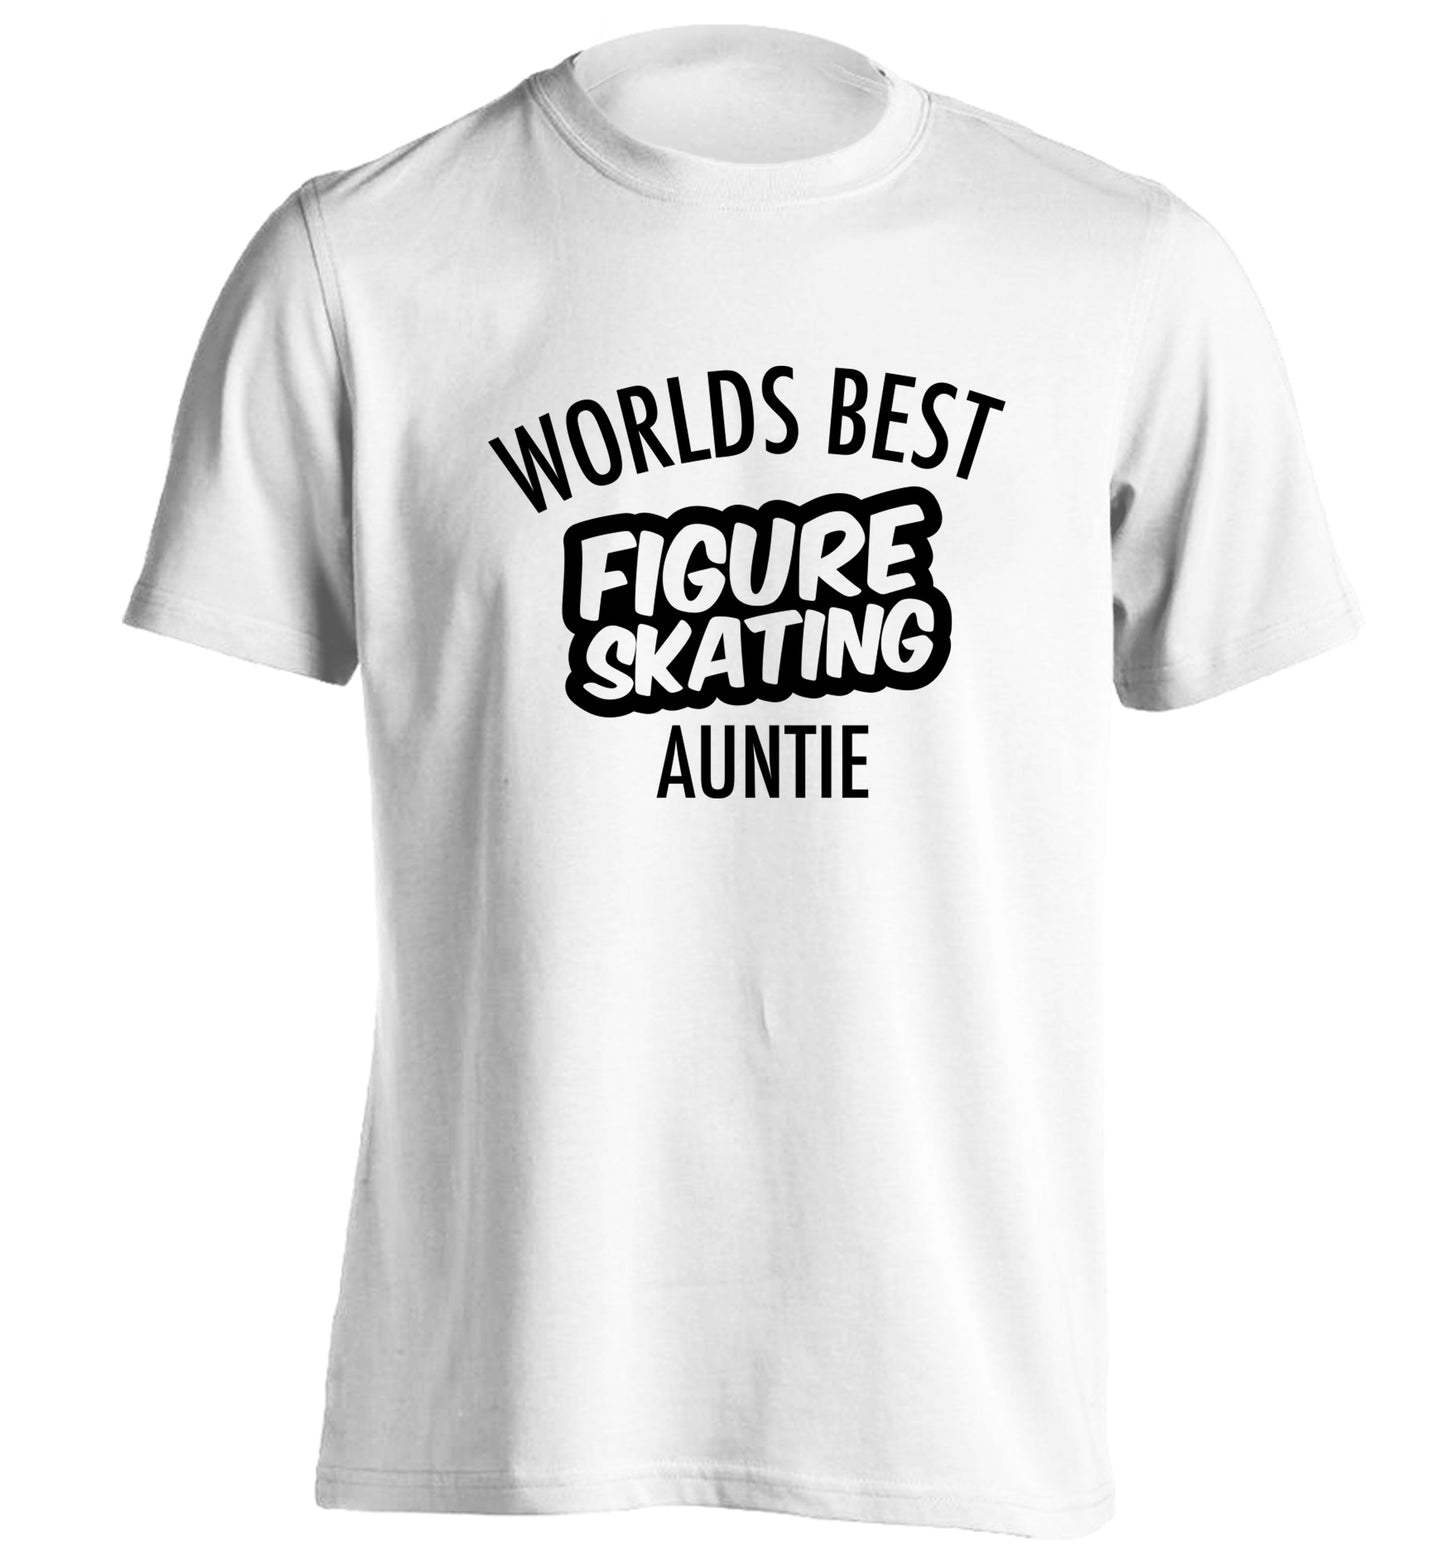 Worlds best figure skating auntie adults unisexwhite Tshirt 2XL